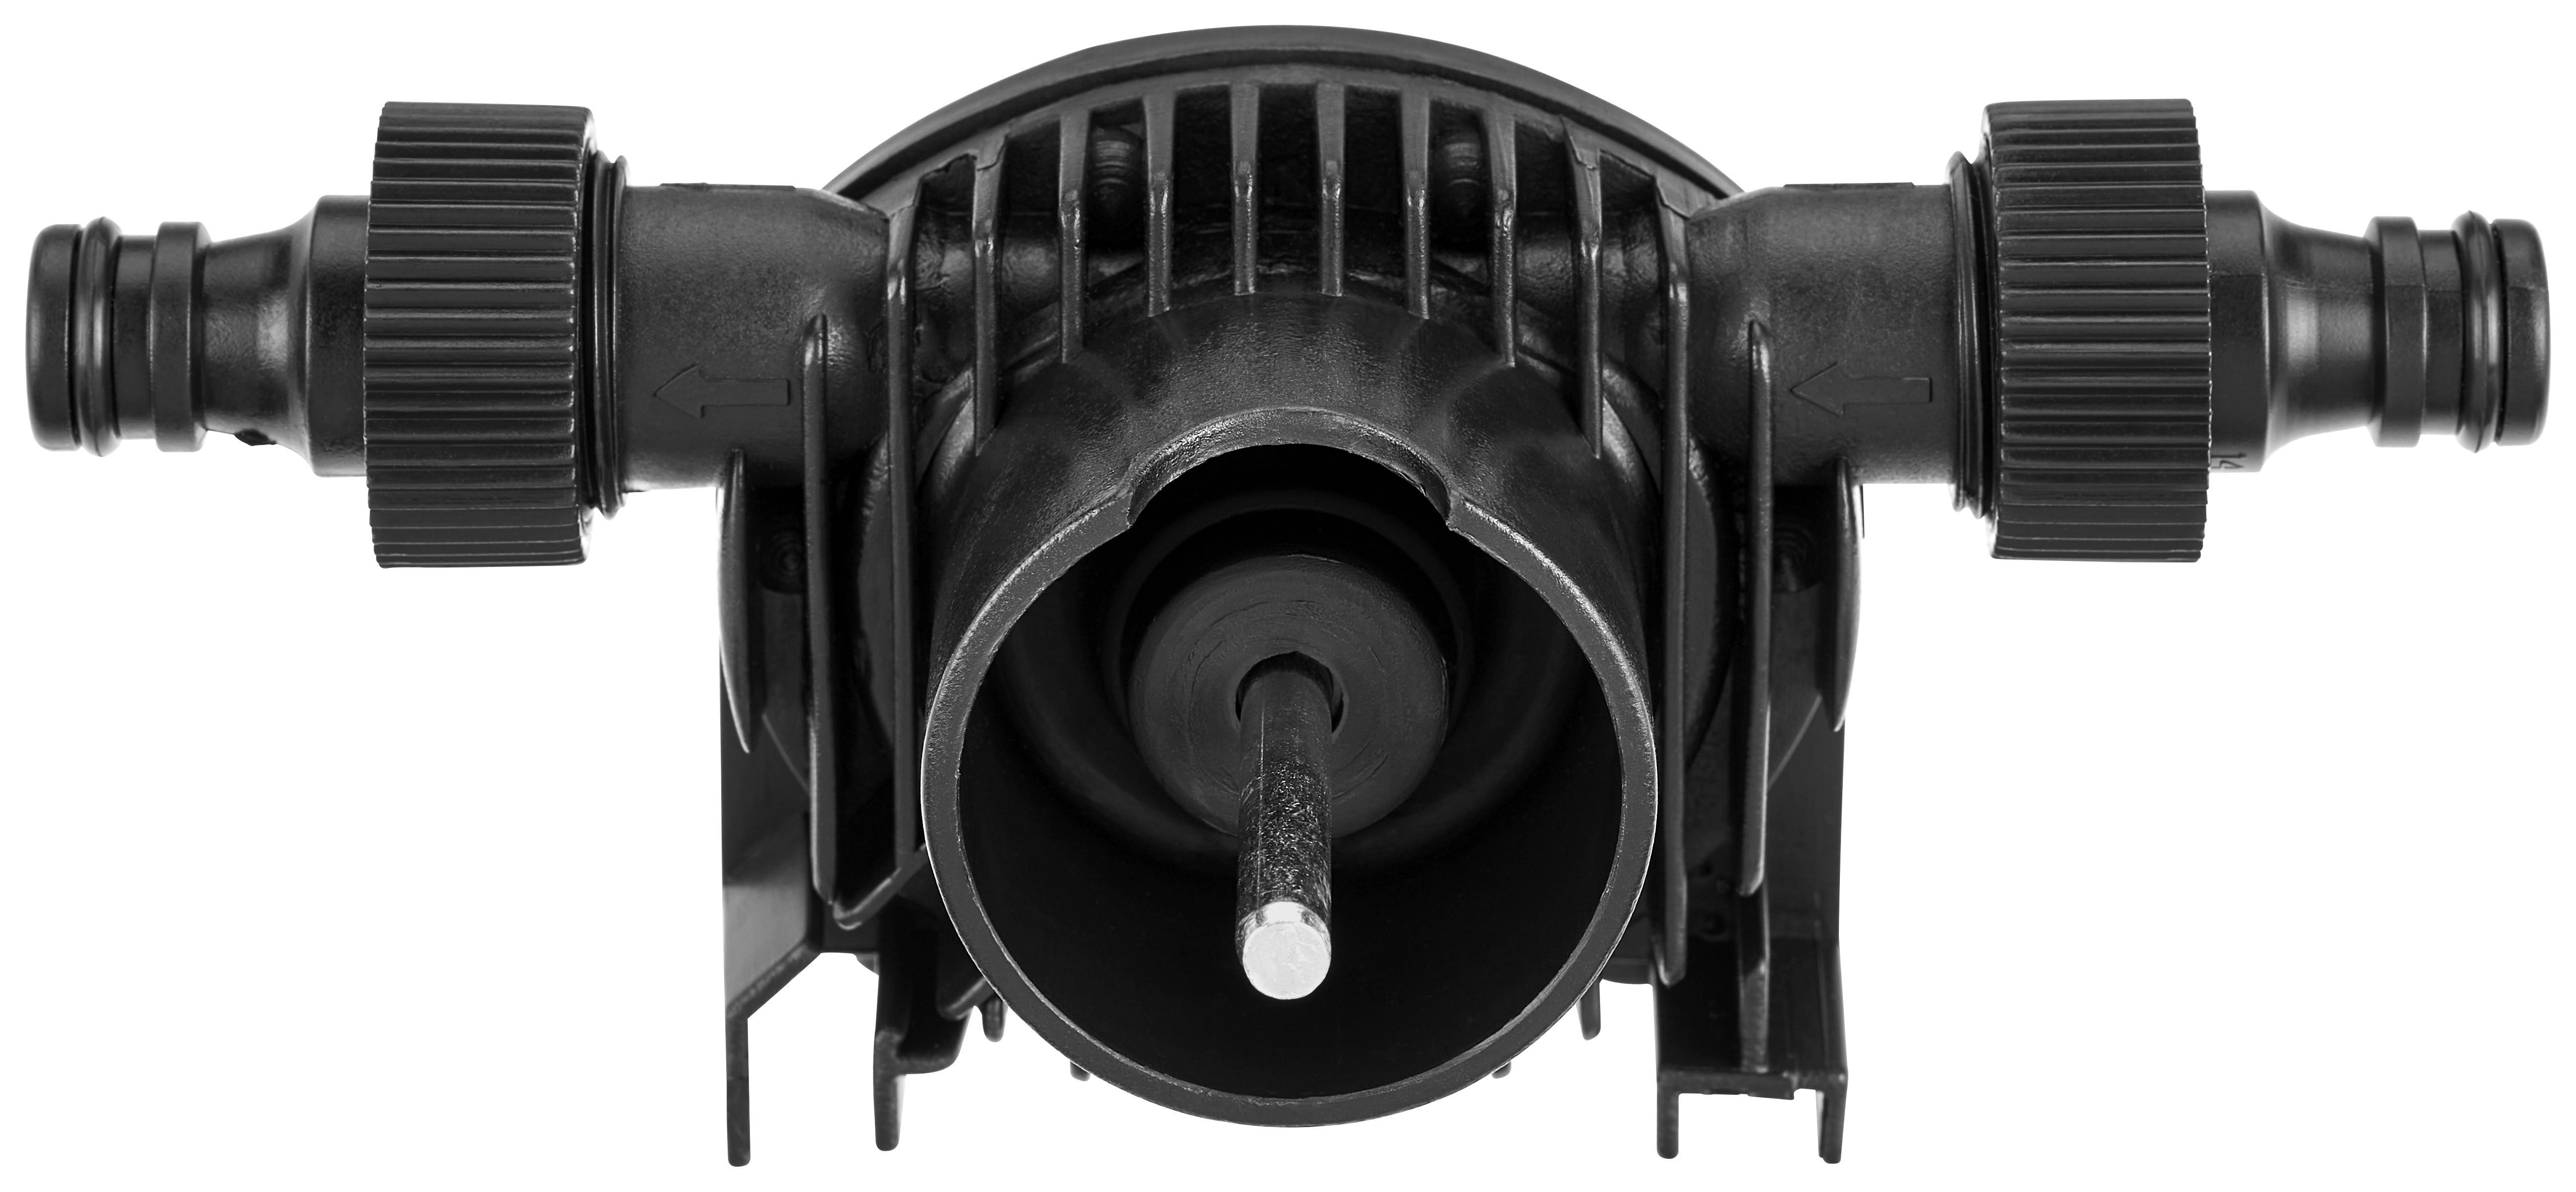 Bohrmaschinenpumpe Hans Tragbar 600 L/H - Schwarz, KONVENTIONELL, Kunststoff (15,5/12/9cm)